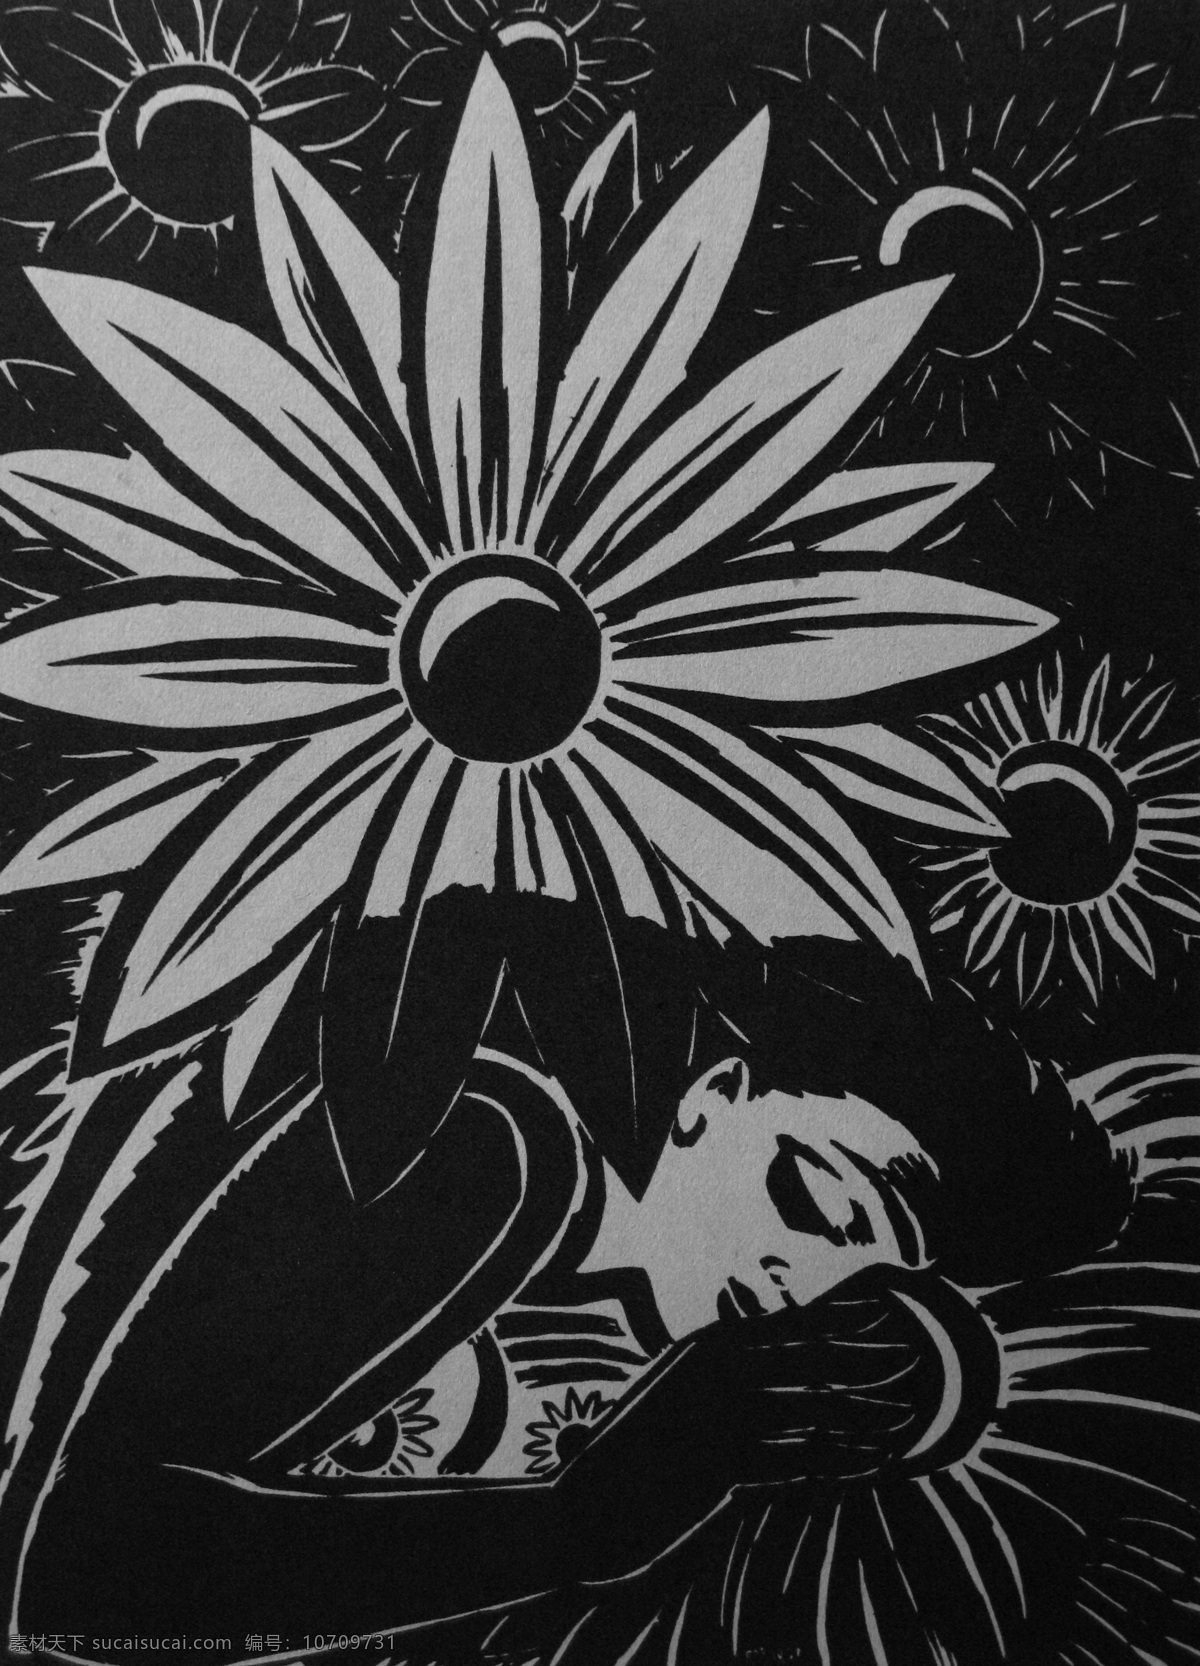 梦 木刻版画 法朗 士 麦绥莱勒 1951年 鲜花 花瓣 睡美人 沉睡 花丛 植物 比利时 艺术家 版画家 艺术 绘画 雕版 印刷 木刻 版画 作品 绘画书法 文化艺术